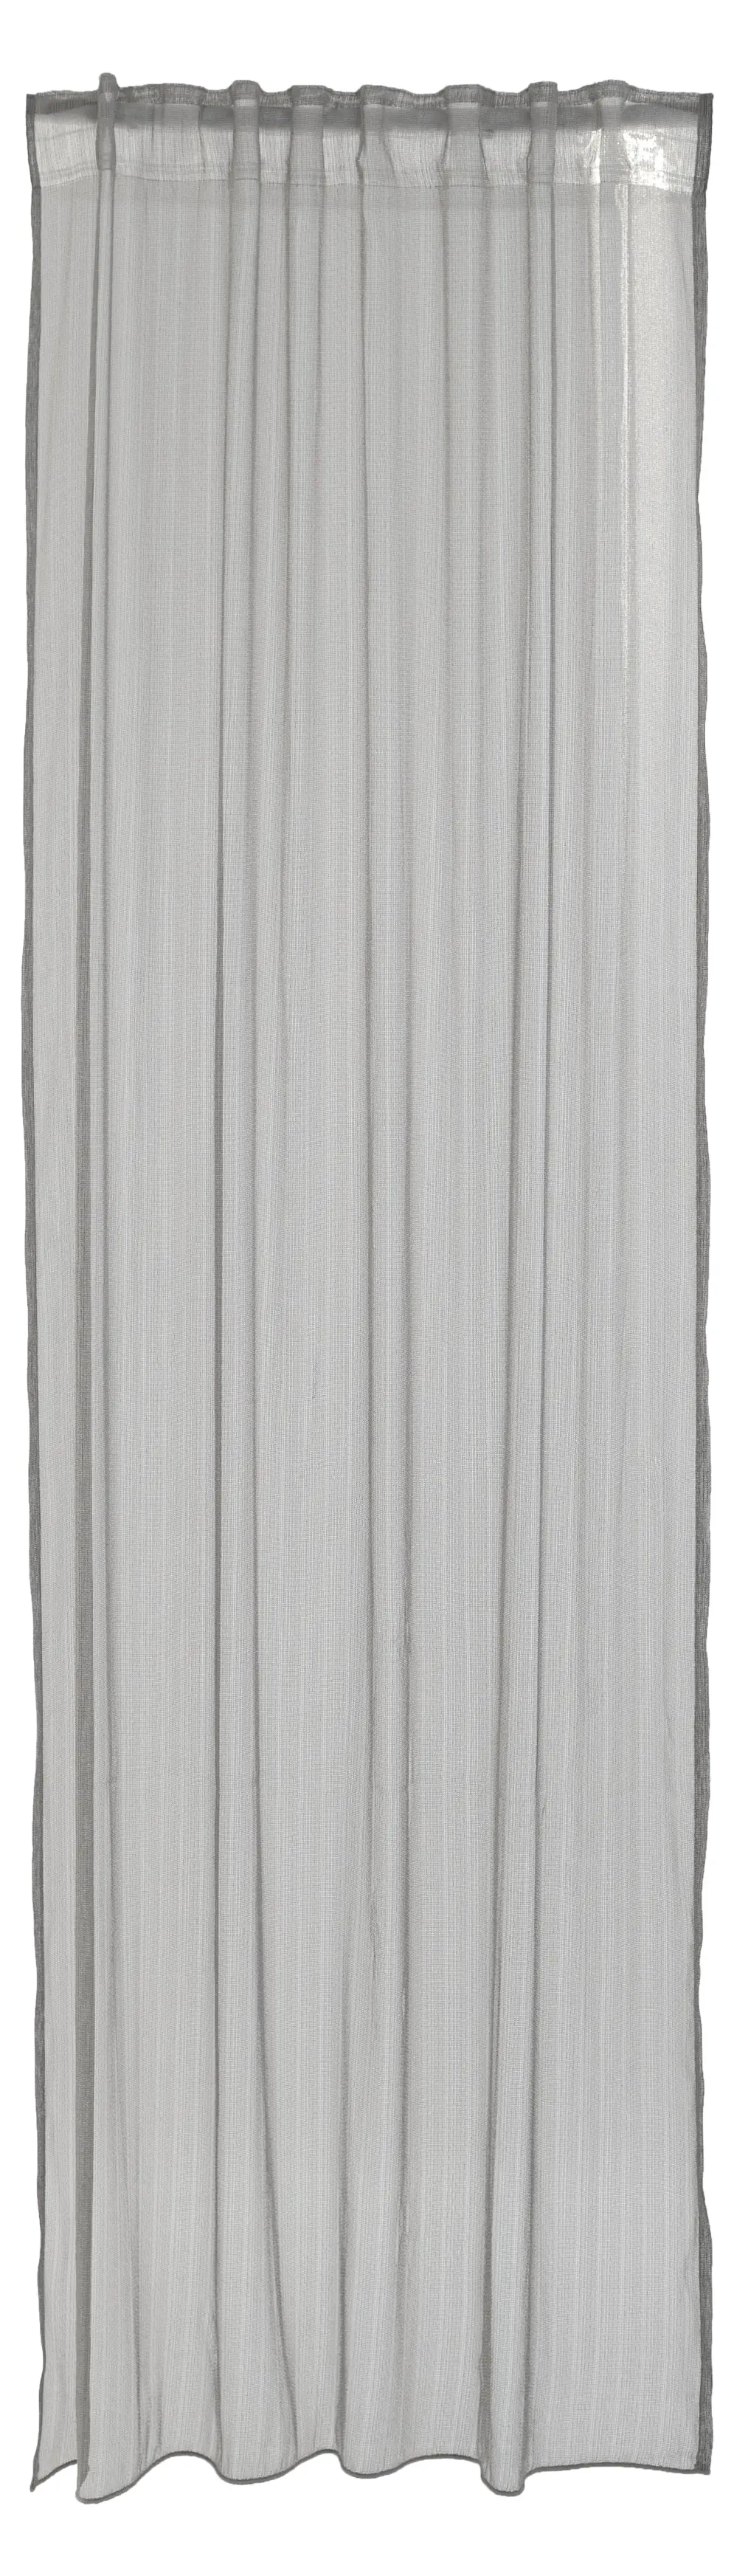 Vorhang modern silber streifen